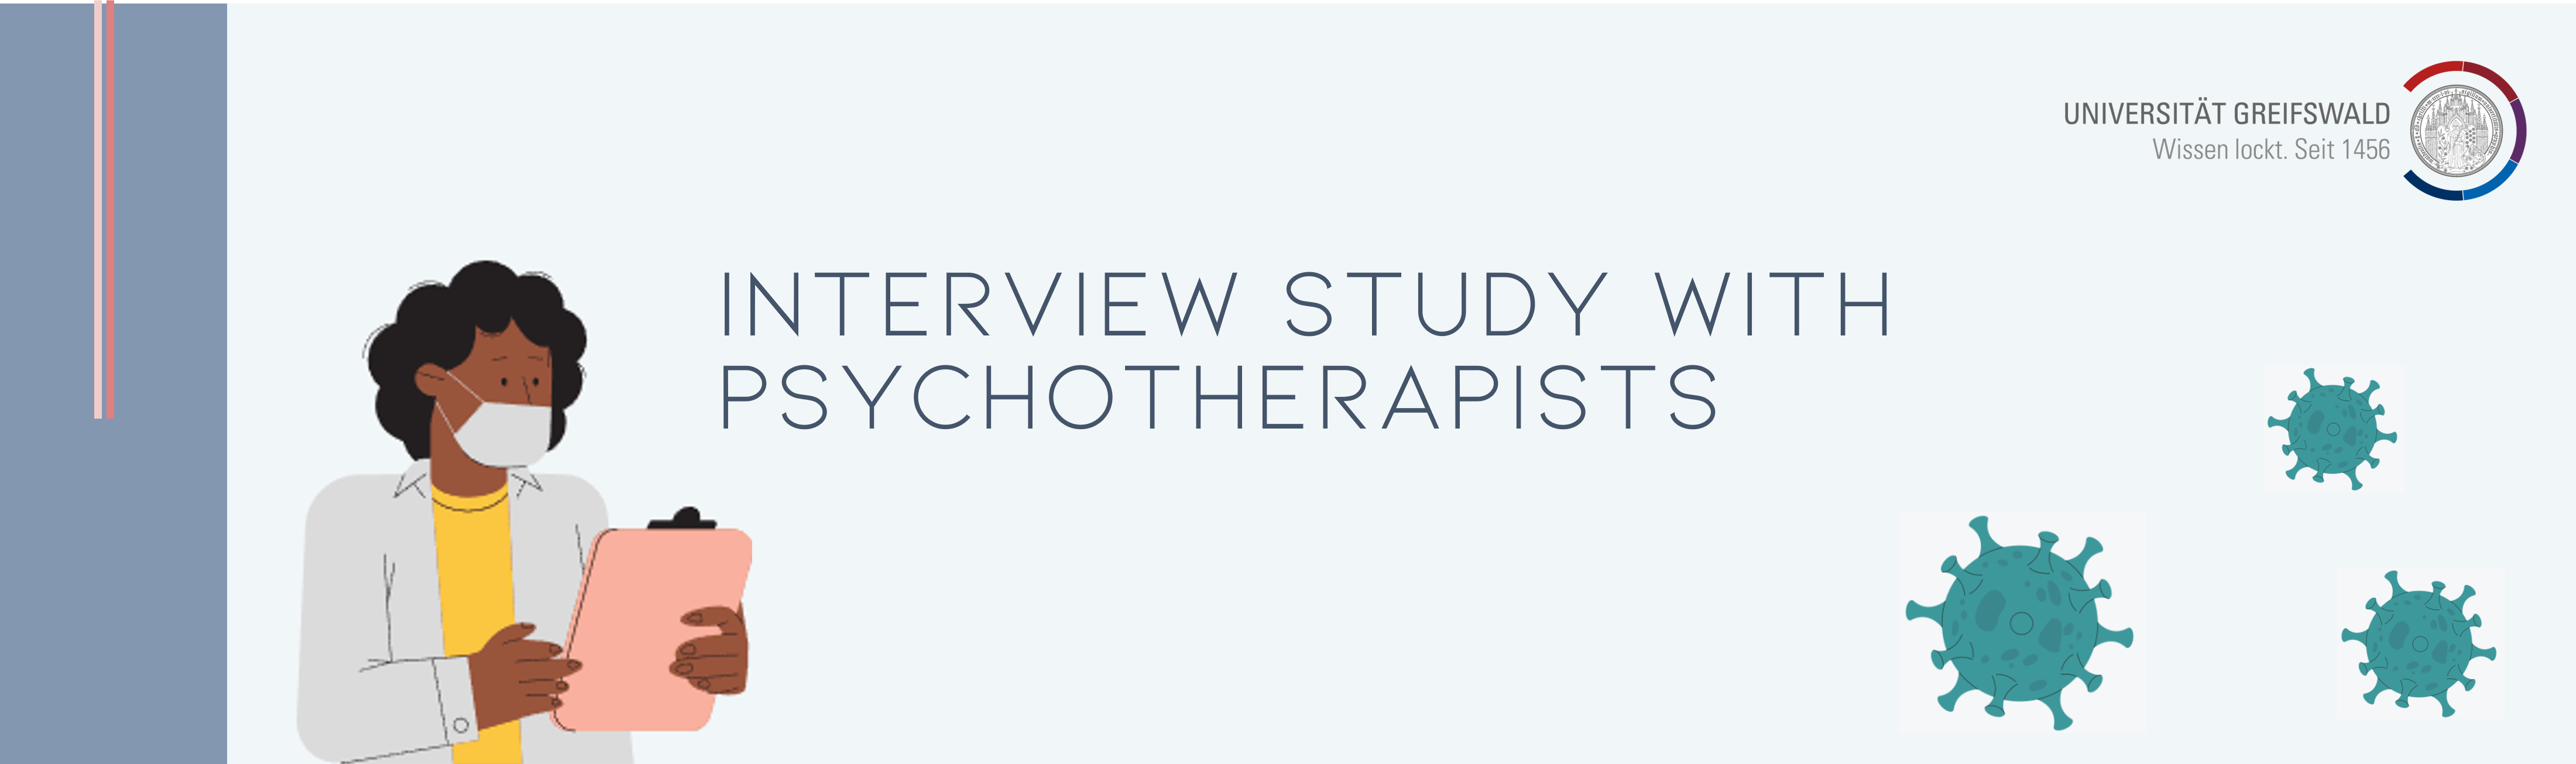 Interviewstudie mit Psychotherapeut:innen